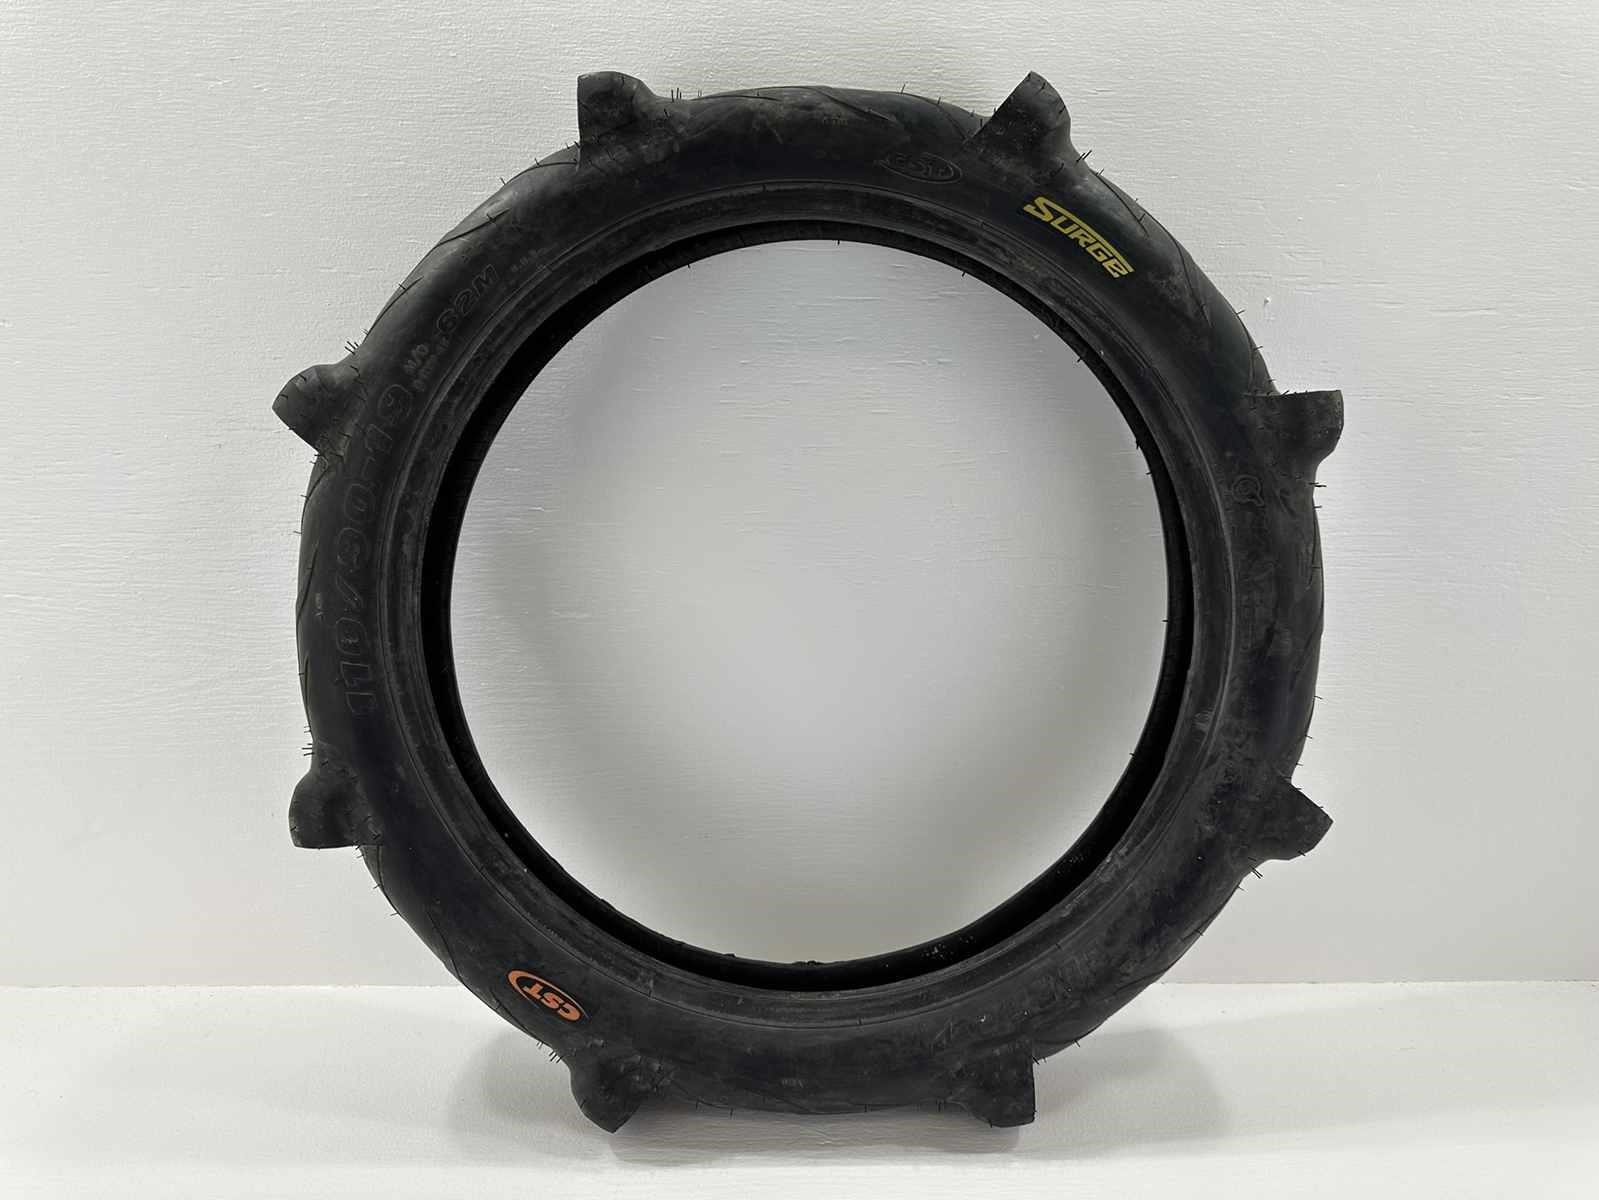 CST Surge 110/90-19, 62M Motorcycle Tire